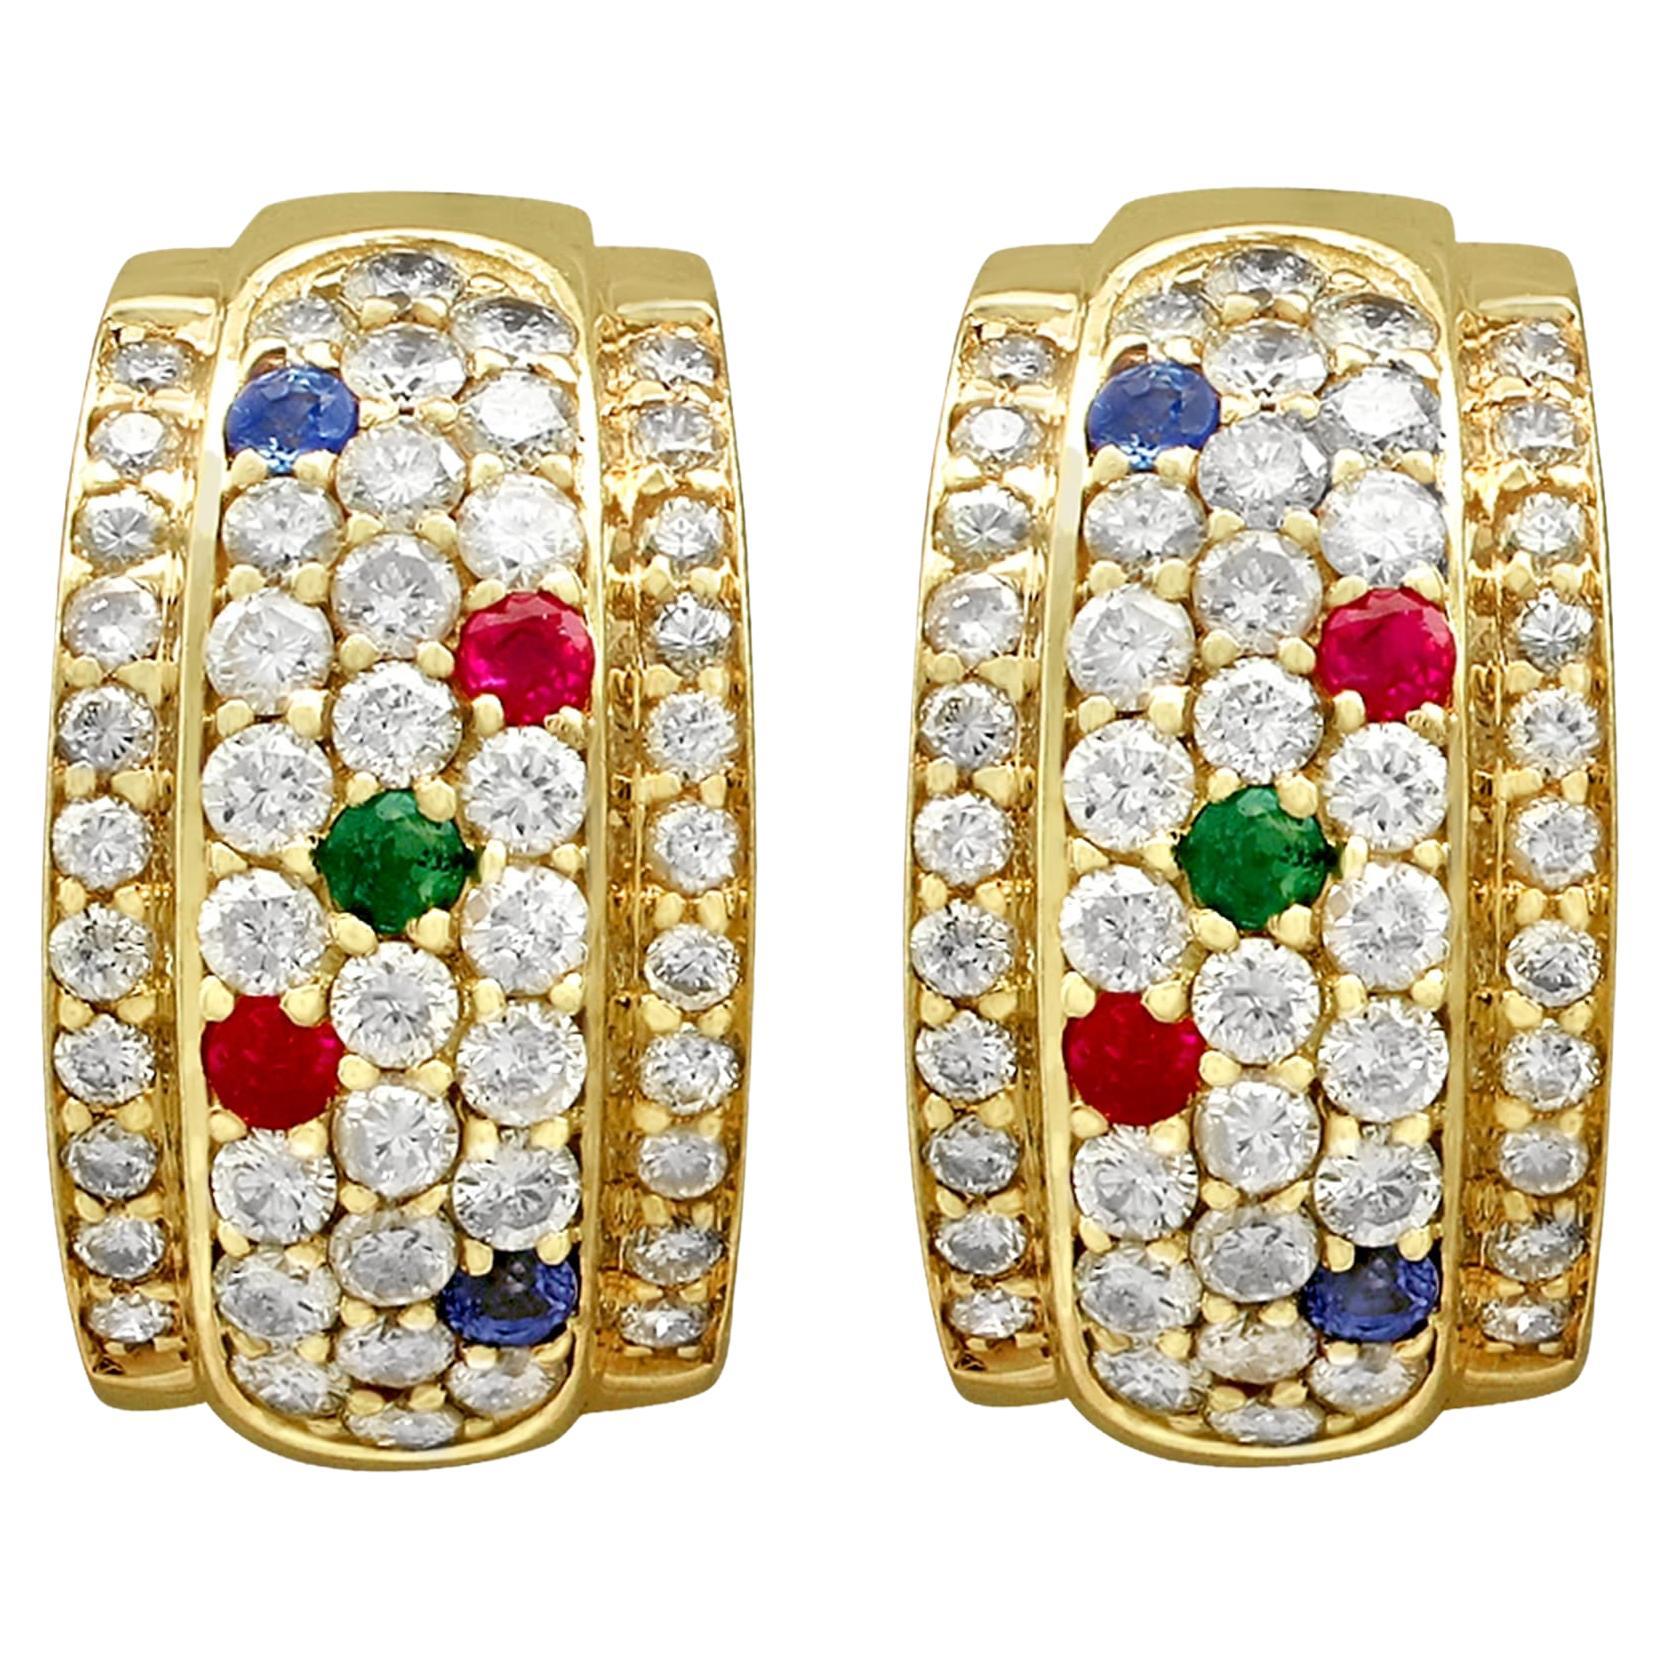 Boucles d'oreilles vintage en or jaune avec diamants, saphirs, rubis et émeraudes